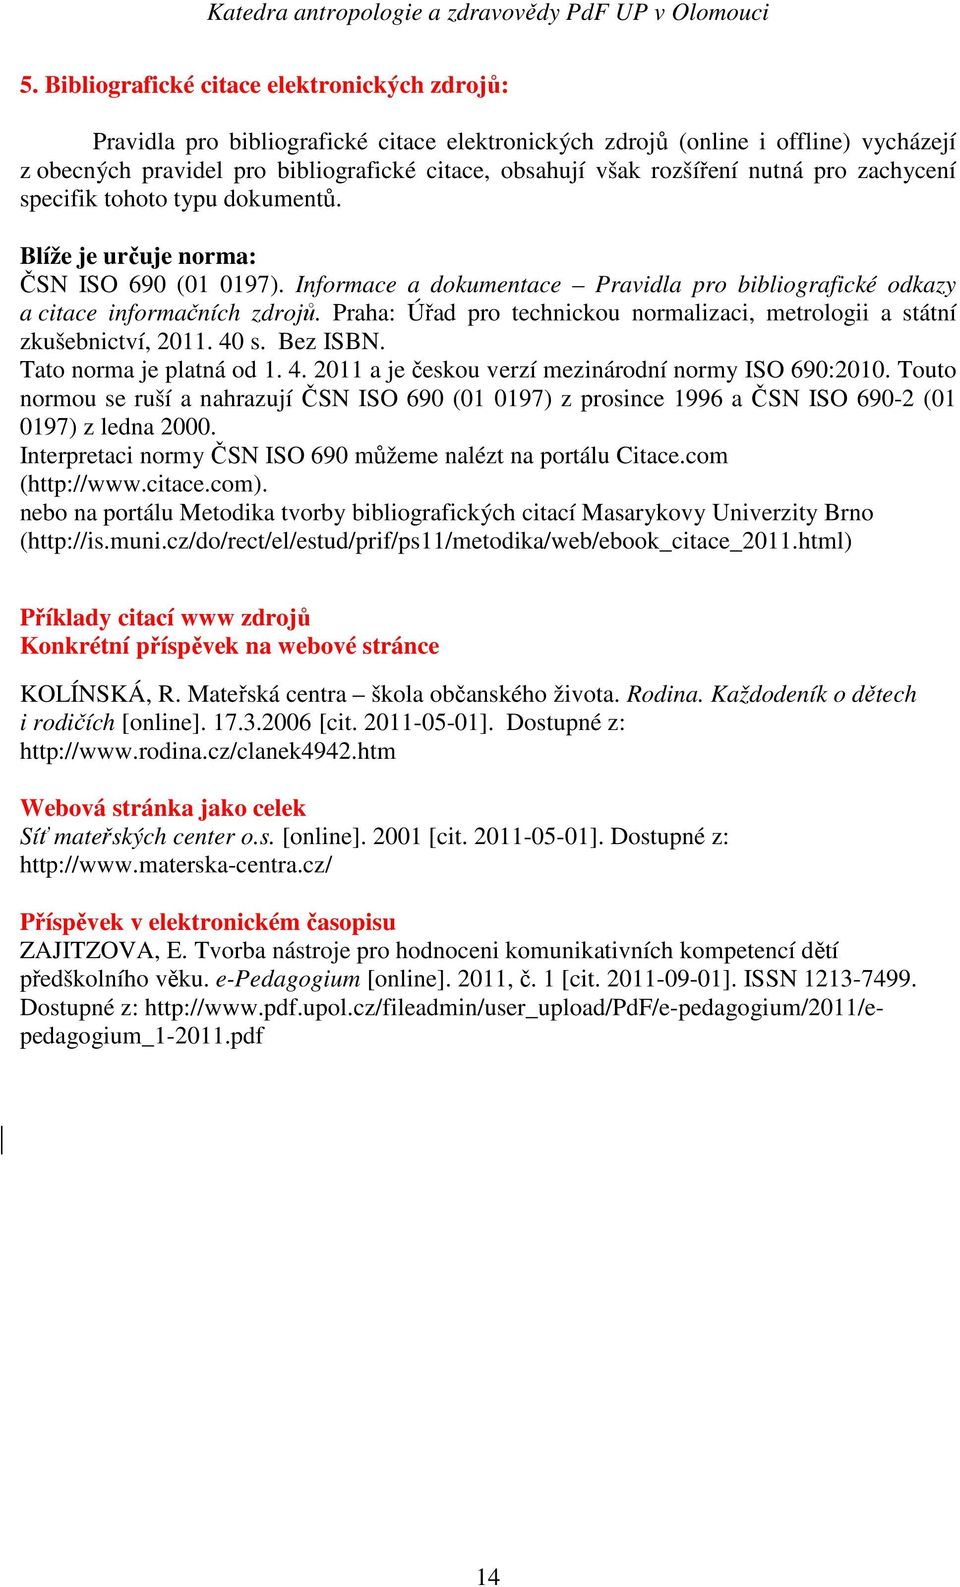 Praha: Úřad pro technickou normalizaci, metrologii a státní zkušebnictví, 2011. 40 s. Bez ISBN. Tato norma je platná od 1. 4. 2011 a je českou verzí mezinárodní normy ISO 690:2010.